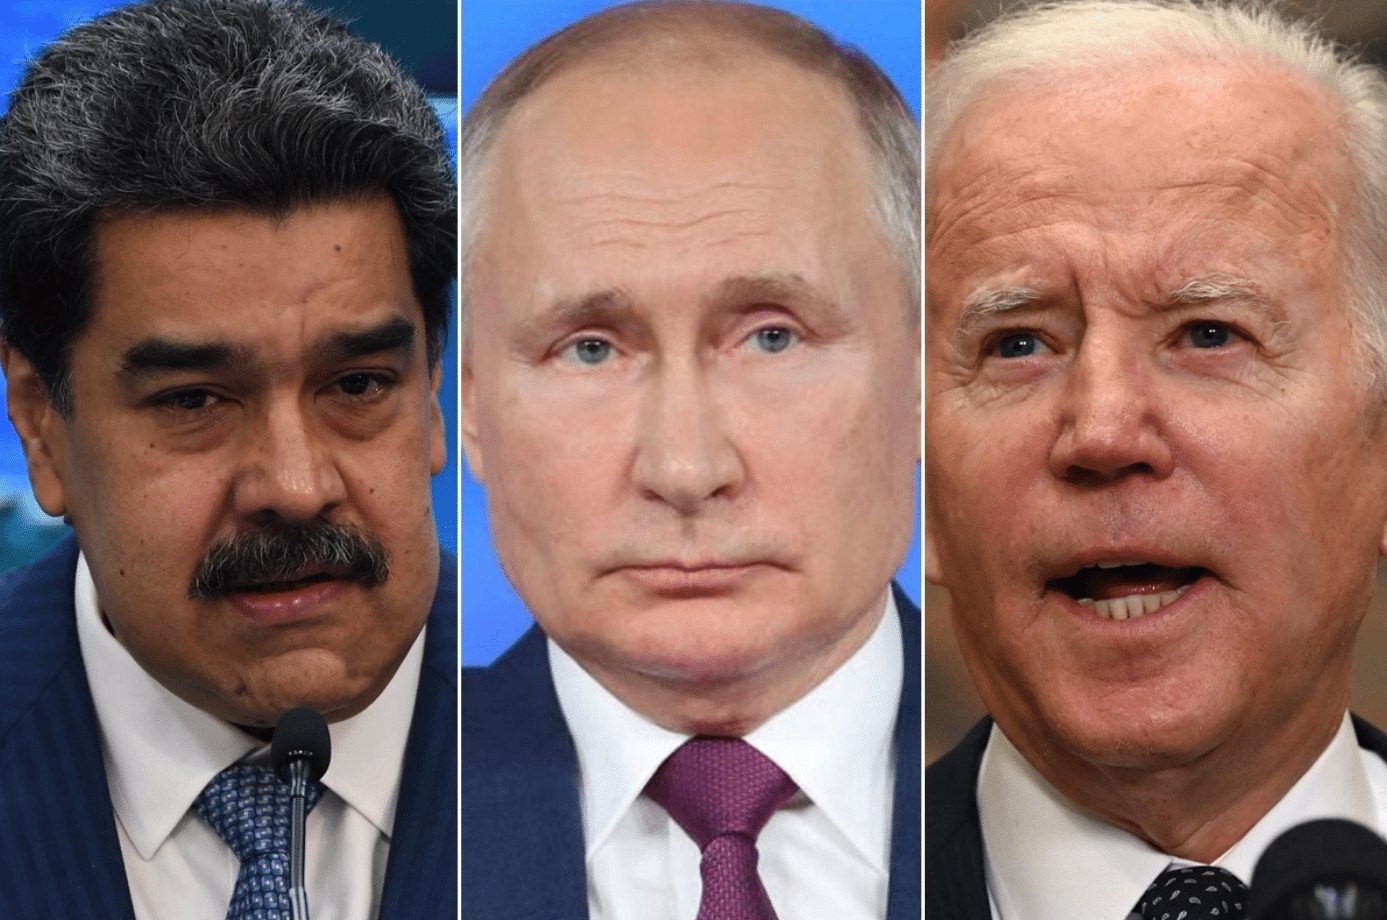 ANÁLISIS: La geopolítica pasa a un segundo plano con la nueva visión de Biden sobre Venezuela